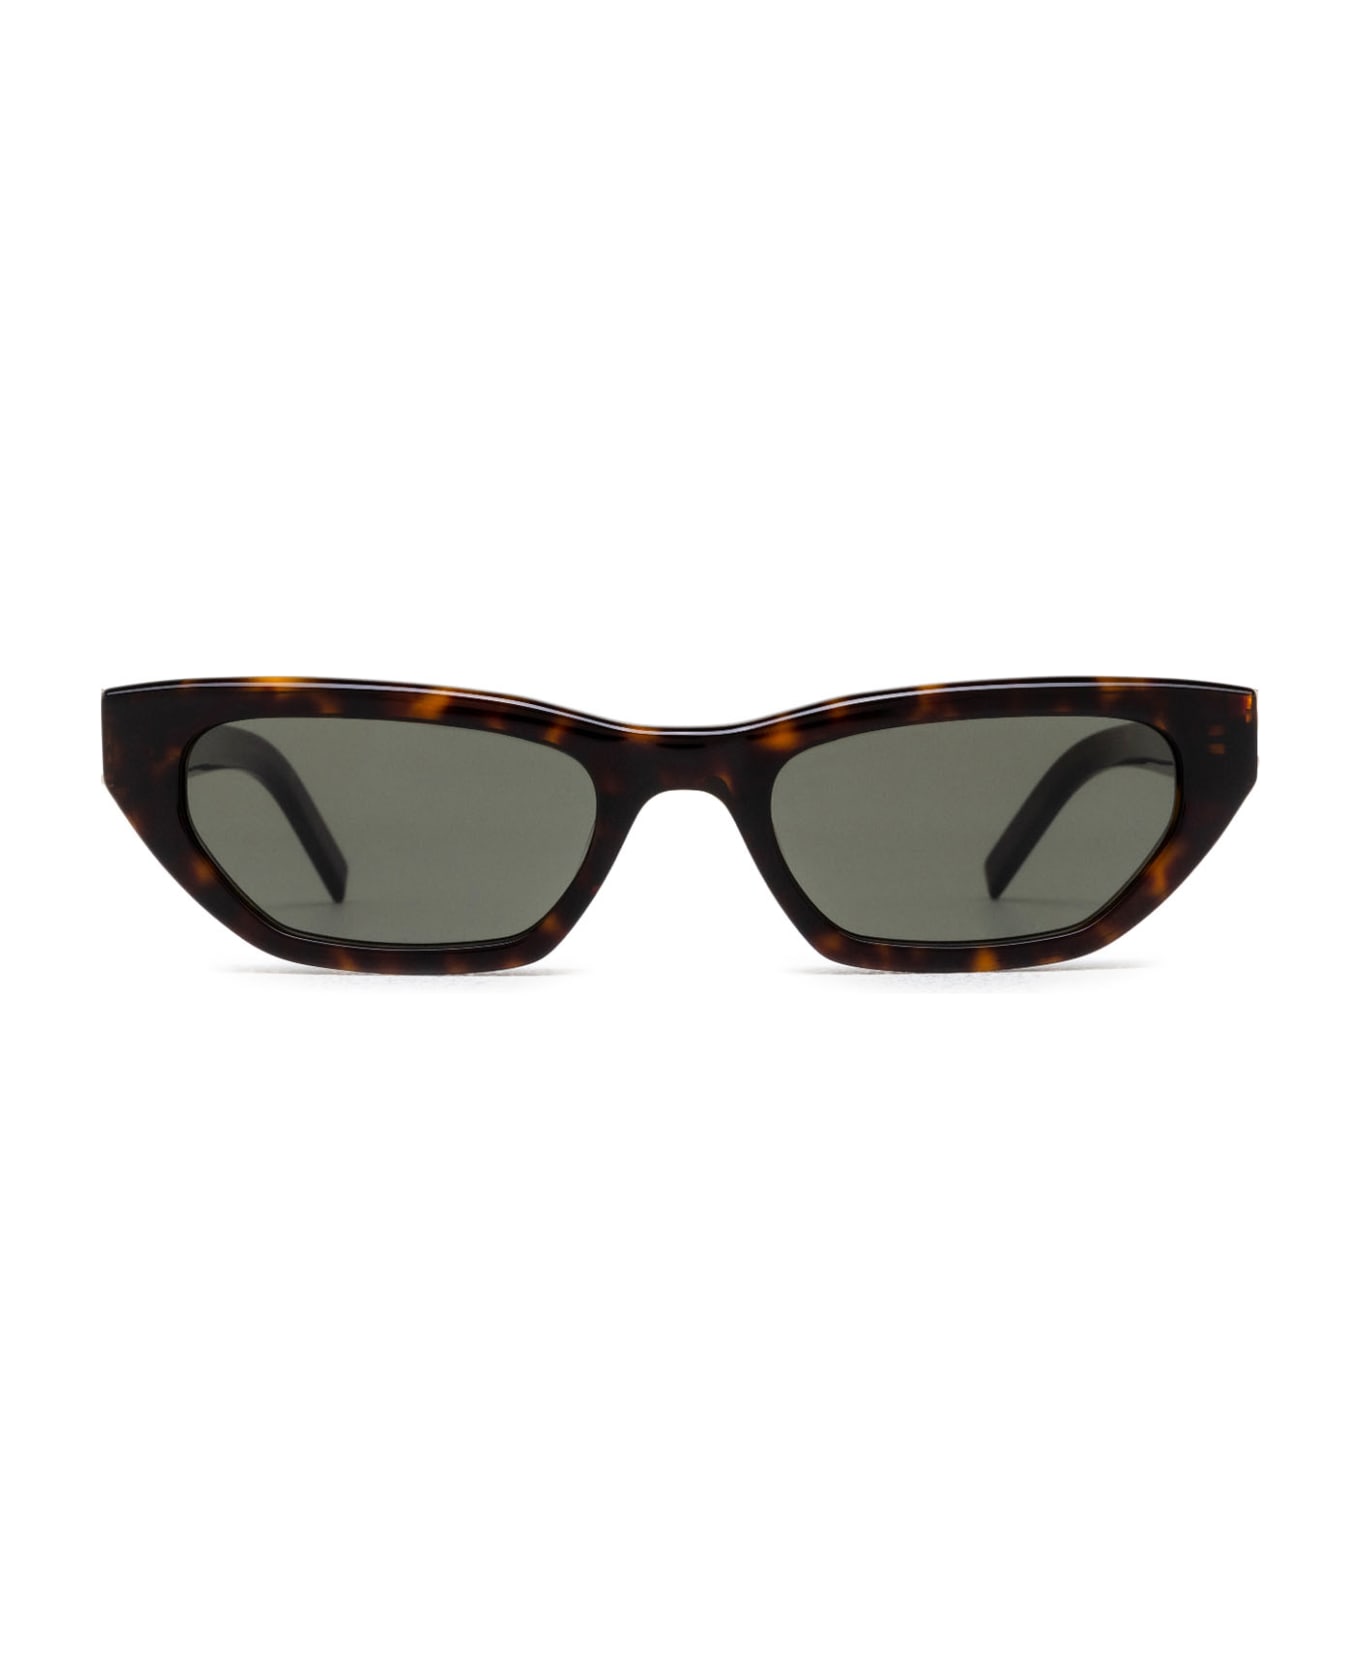 Saint Laurent Eyewear Sl M126 Havana Sunglasses - Havana